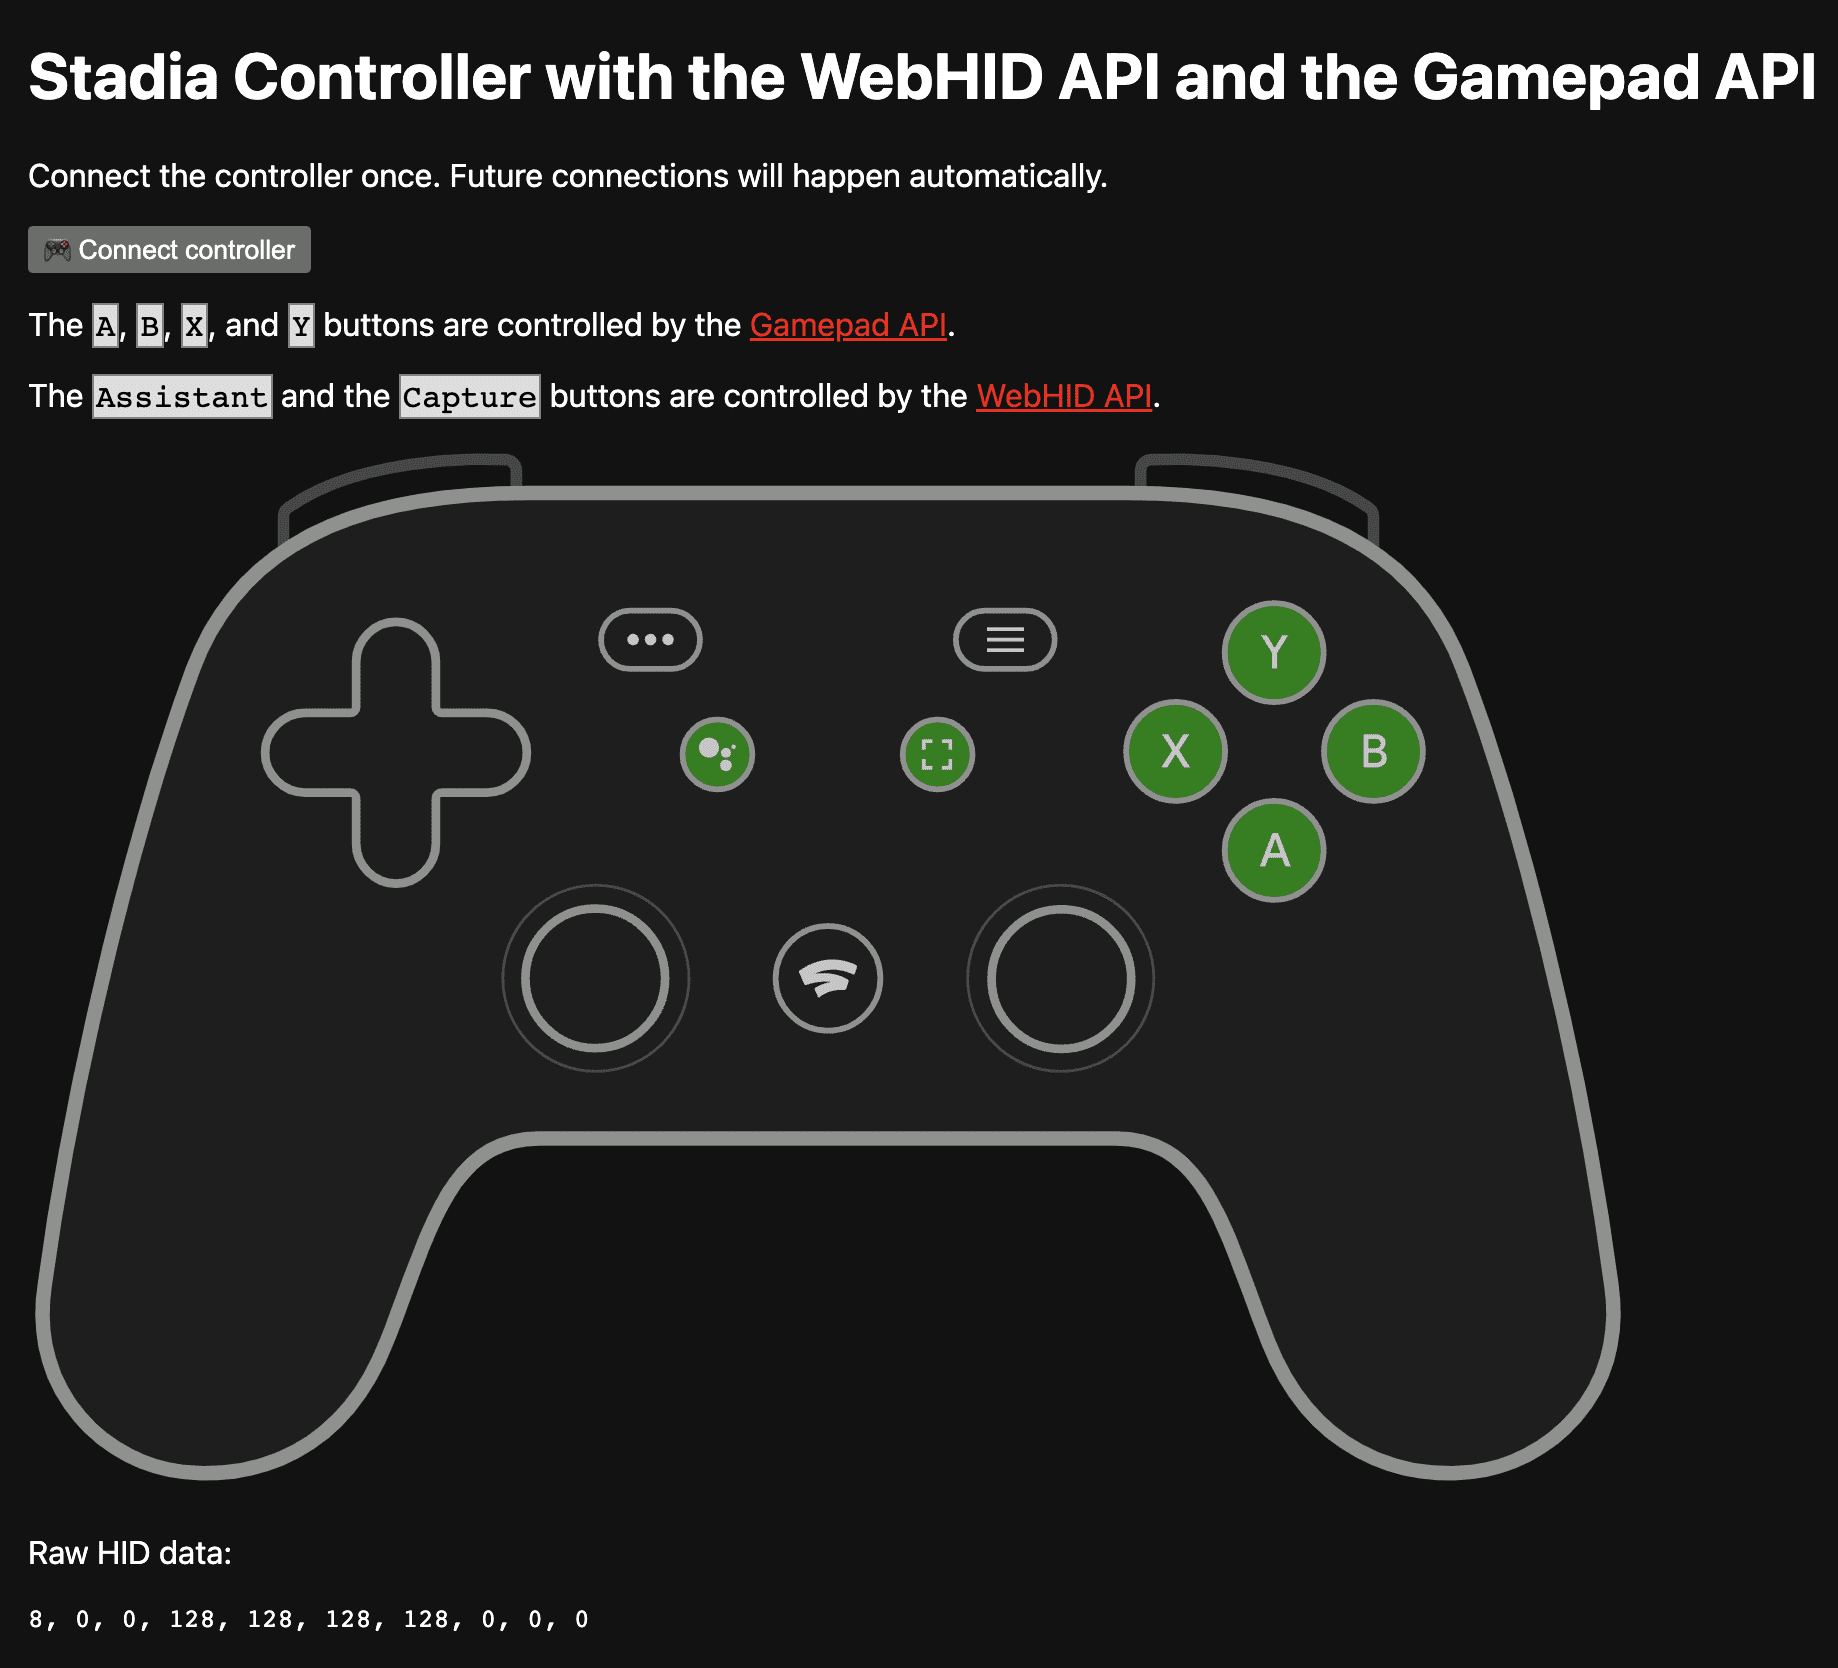 位於 https://stadia-controller-webhid-gamepad.glitch.me/ 中的試用版應用程式，顯示了由 Gamepad API 控制的 A、B、X 和 Y 按鈕，以及由 WebHID API 控制的 Google 助理和「擷取」按鈕。